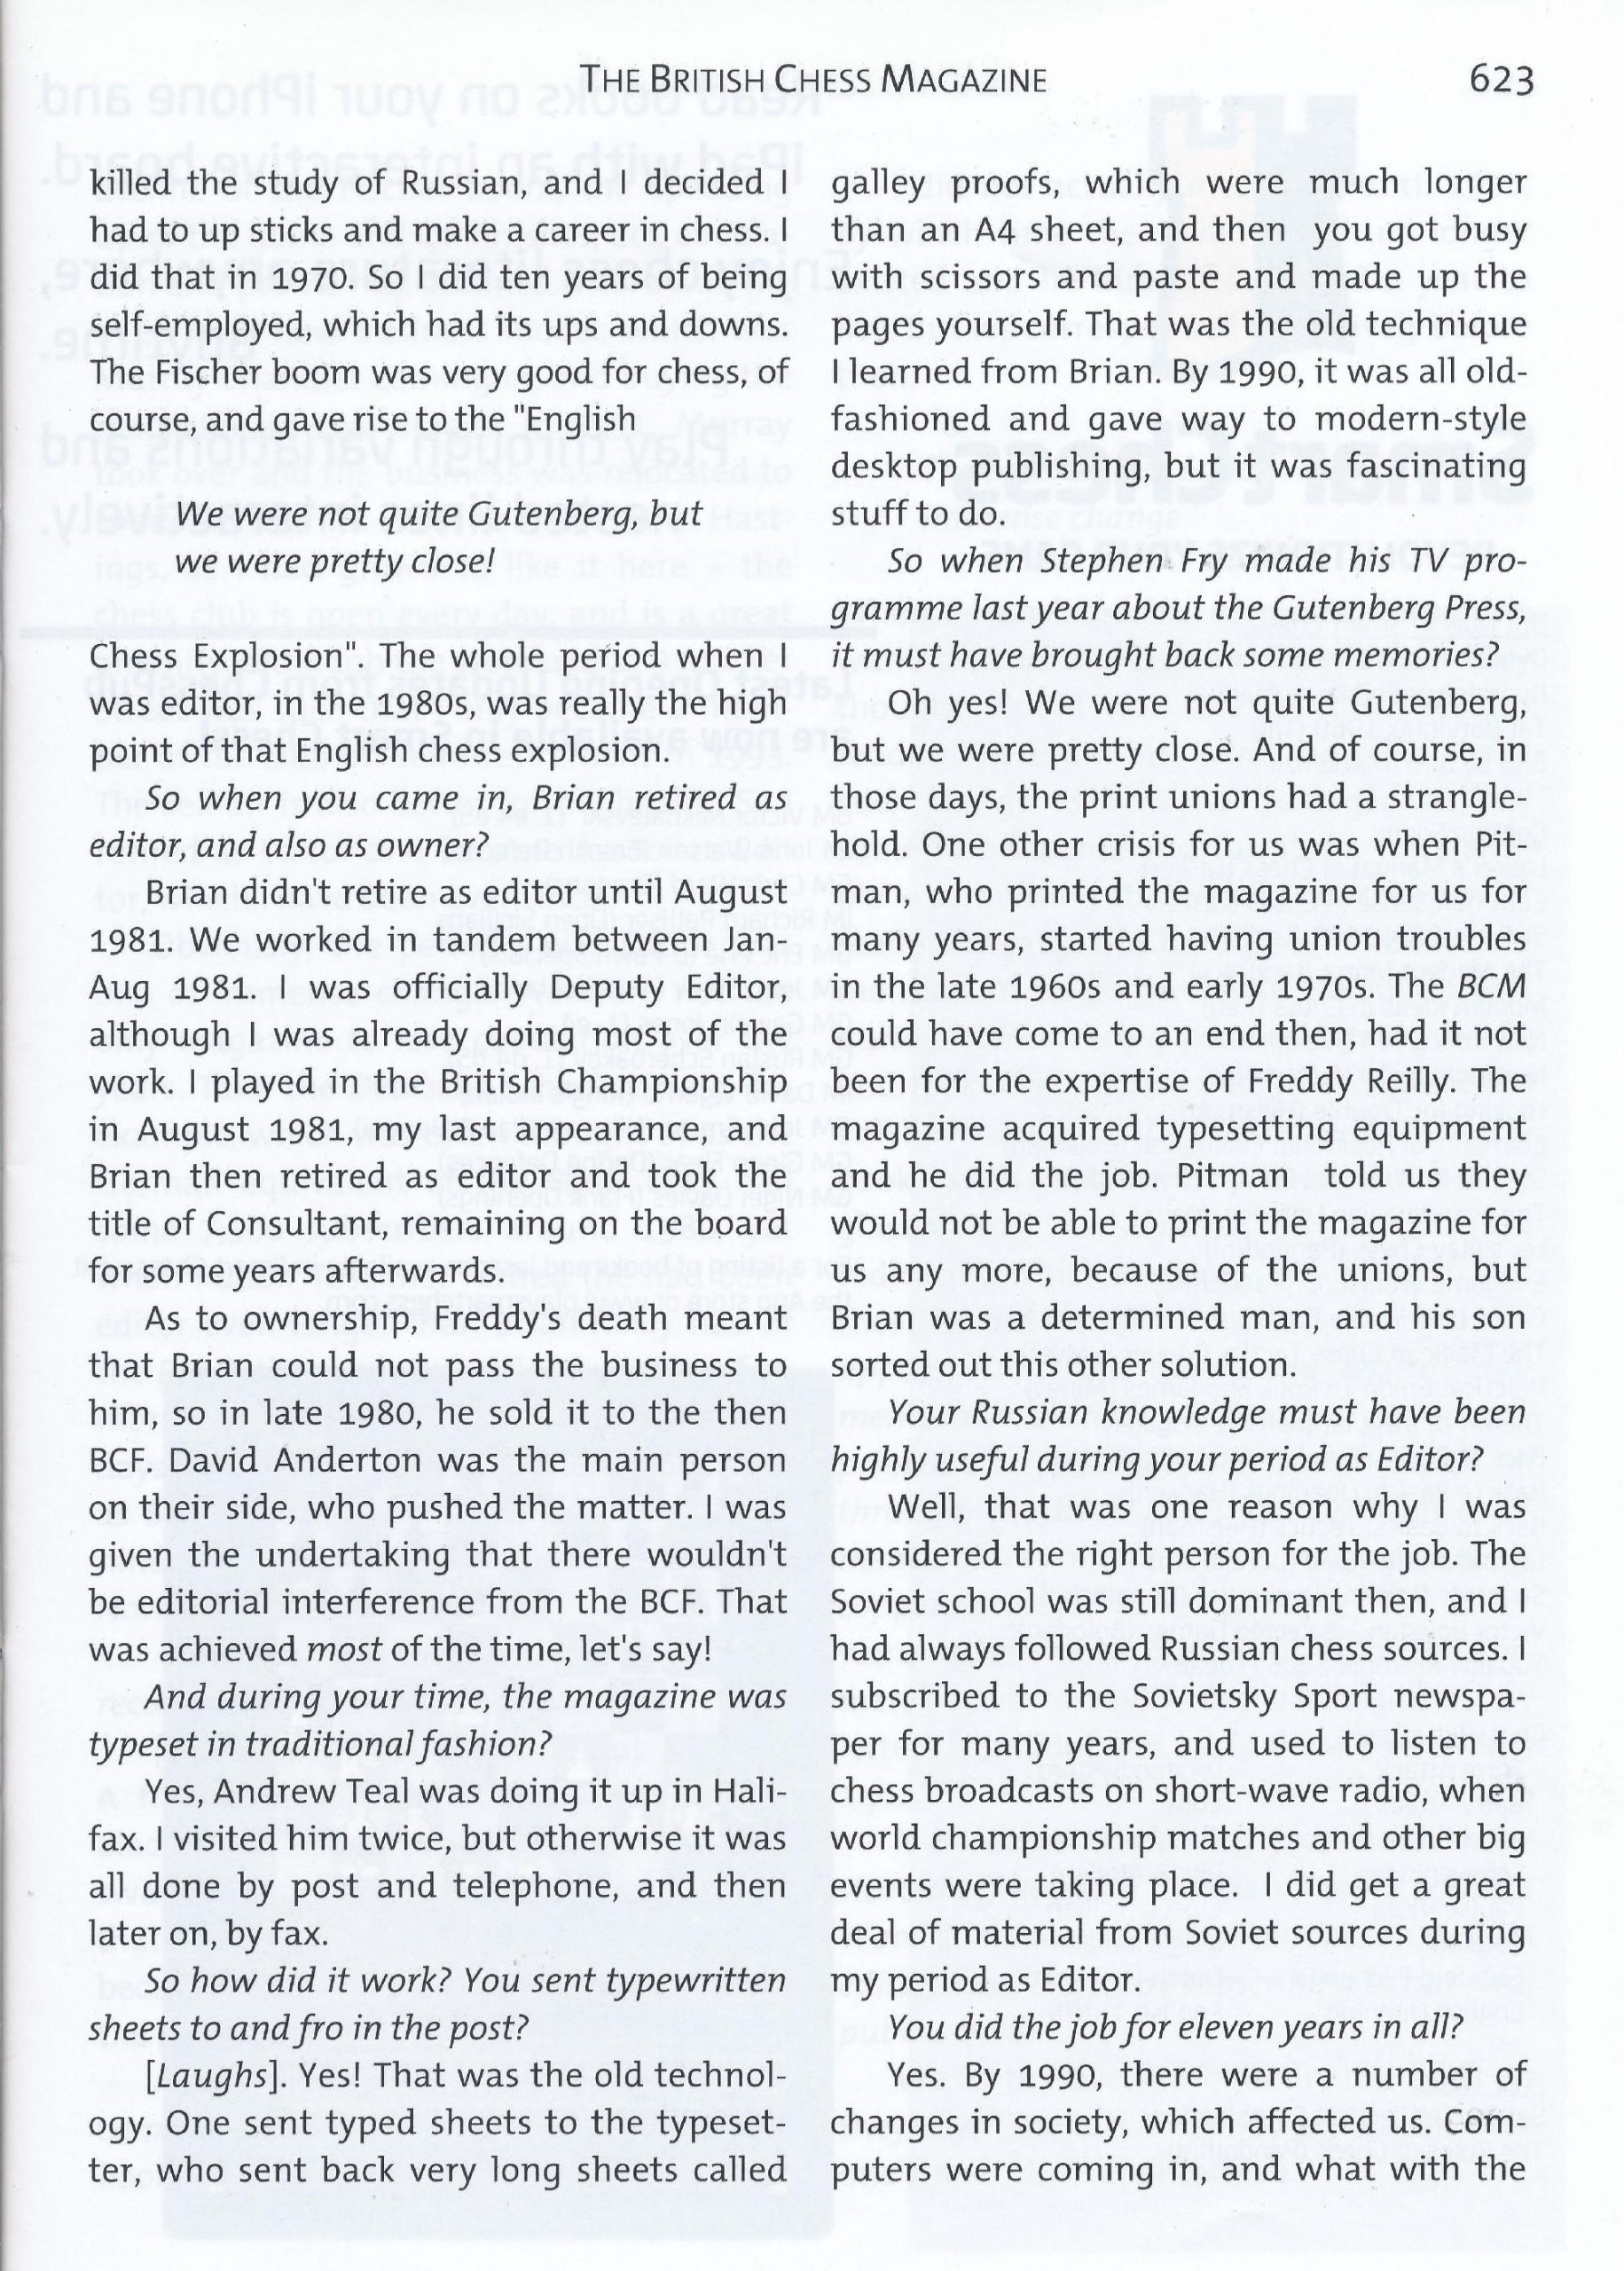 British Chess Magazine, Volume CXXX (103), Number 12, December, Page 623